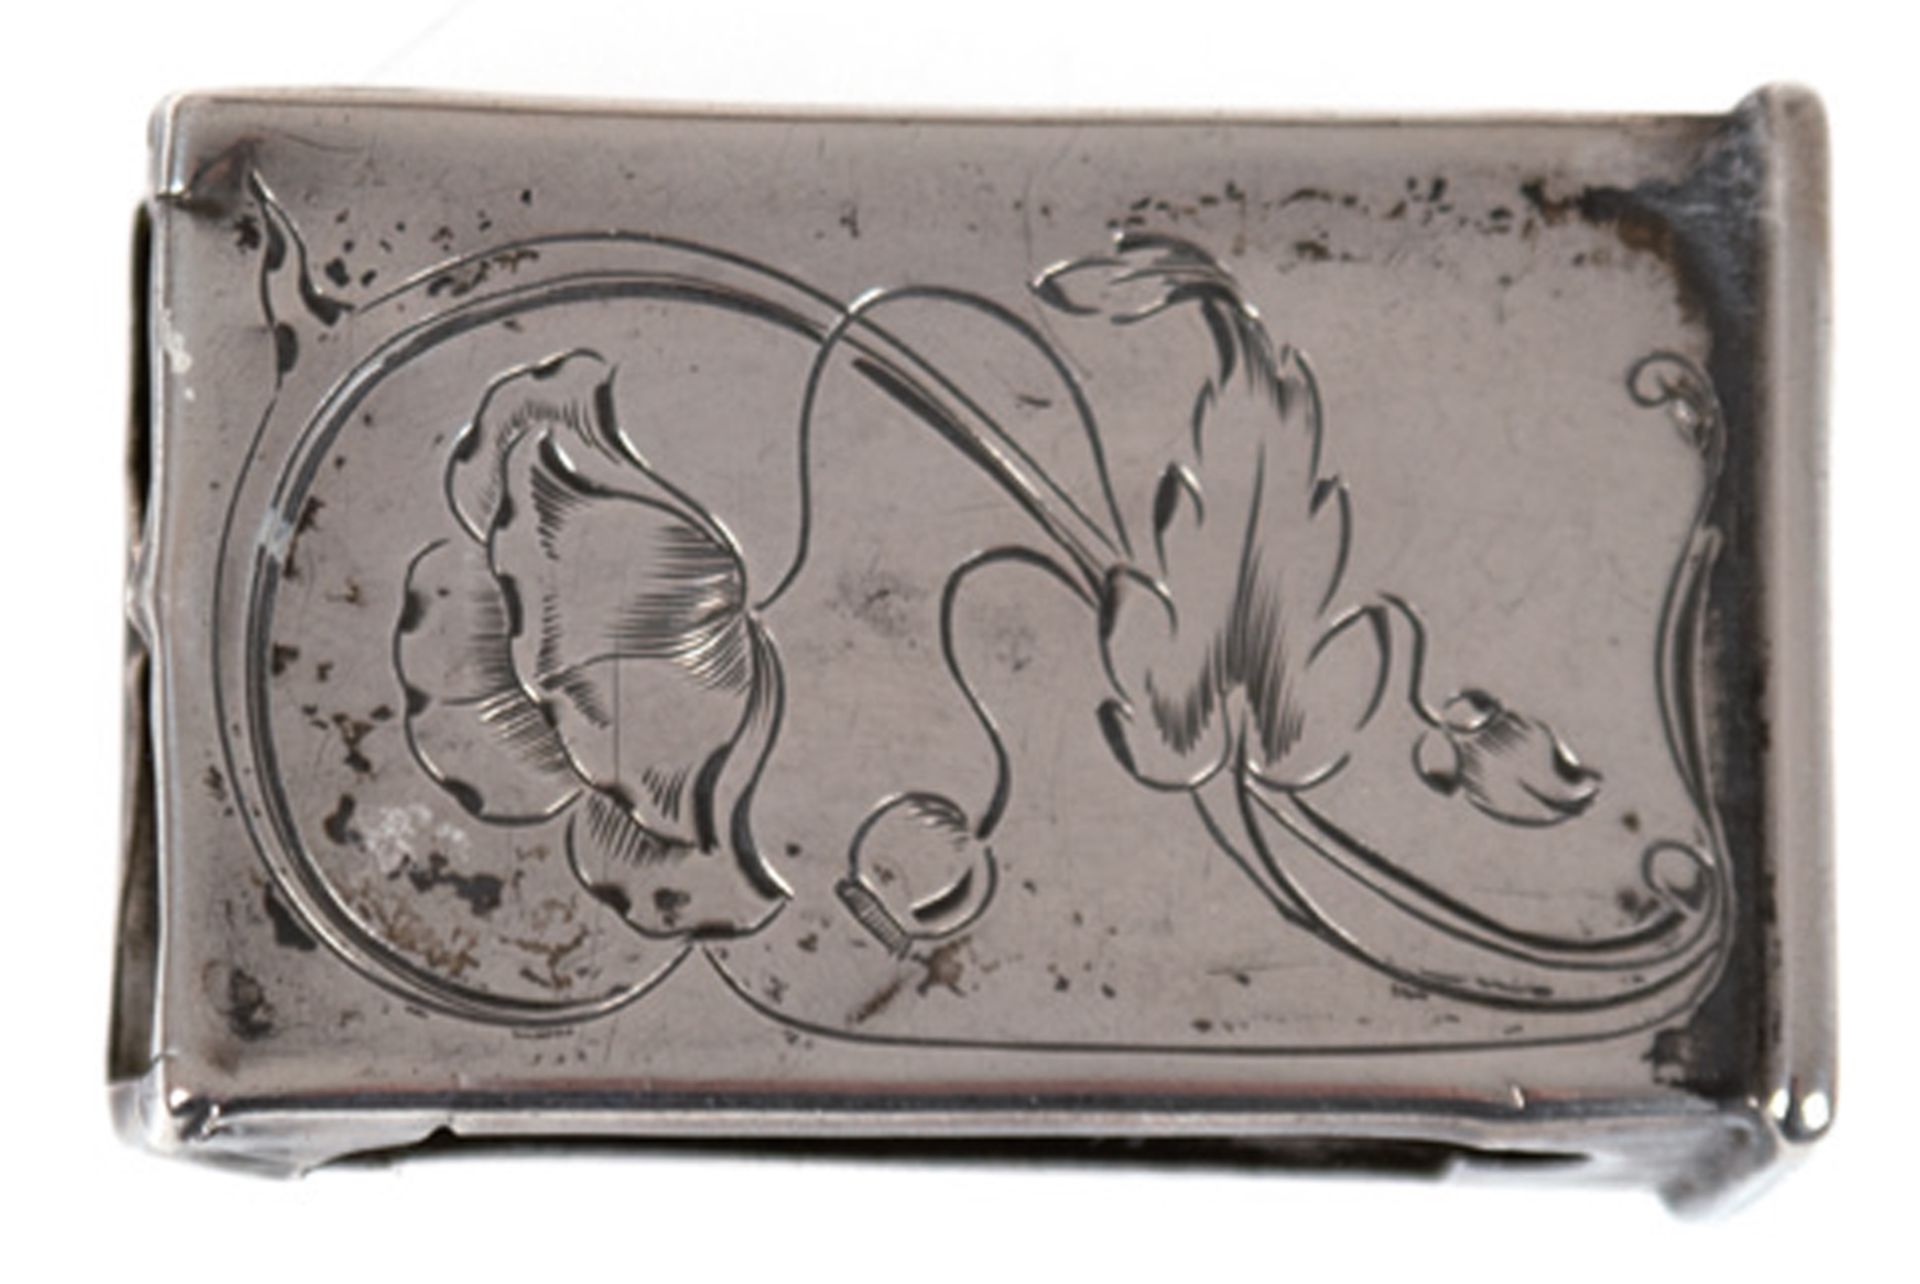 Streichholzschachtelhülle, um 1900, 800er Silber, Schauseite floral ziseliert, Gebrauchspuren, 4,5x